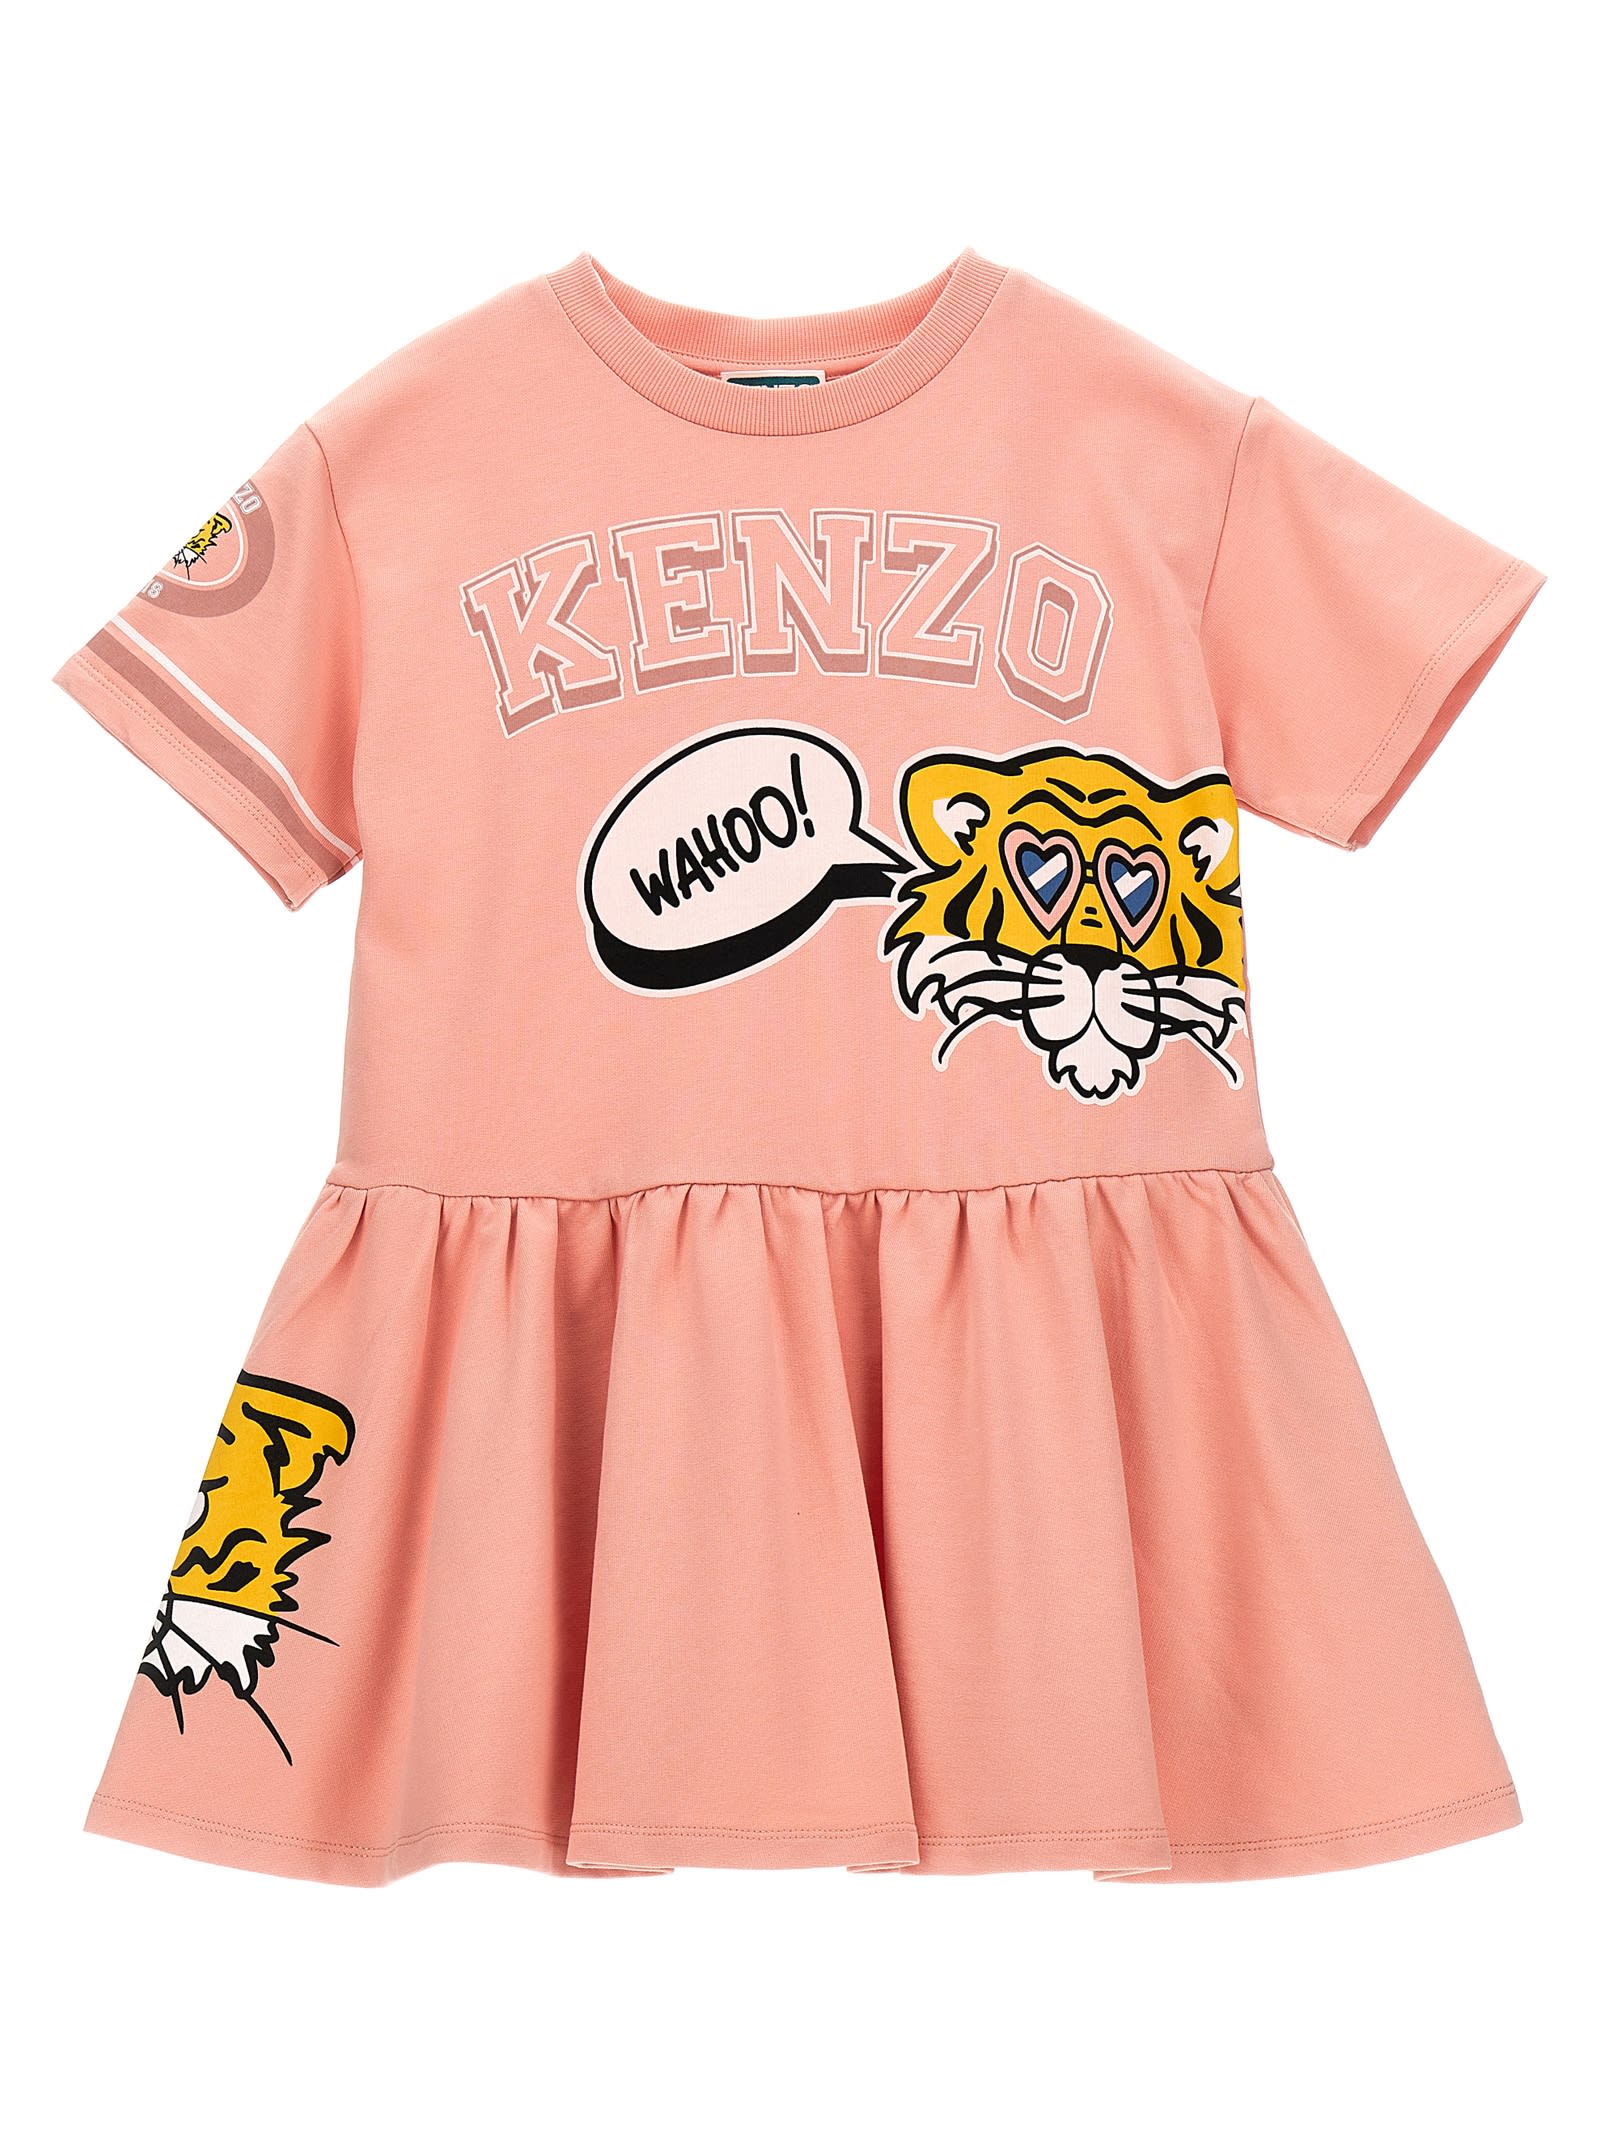 Kenzo Kids' Printed Dress In Pink